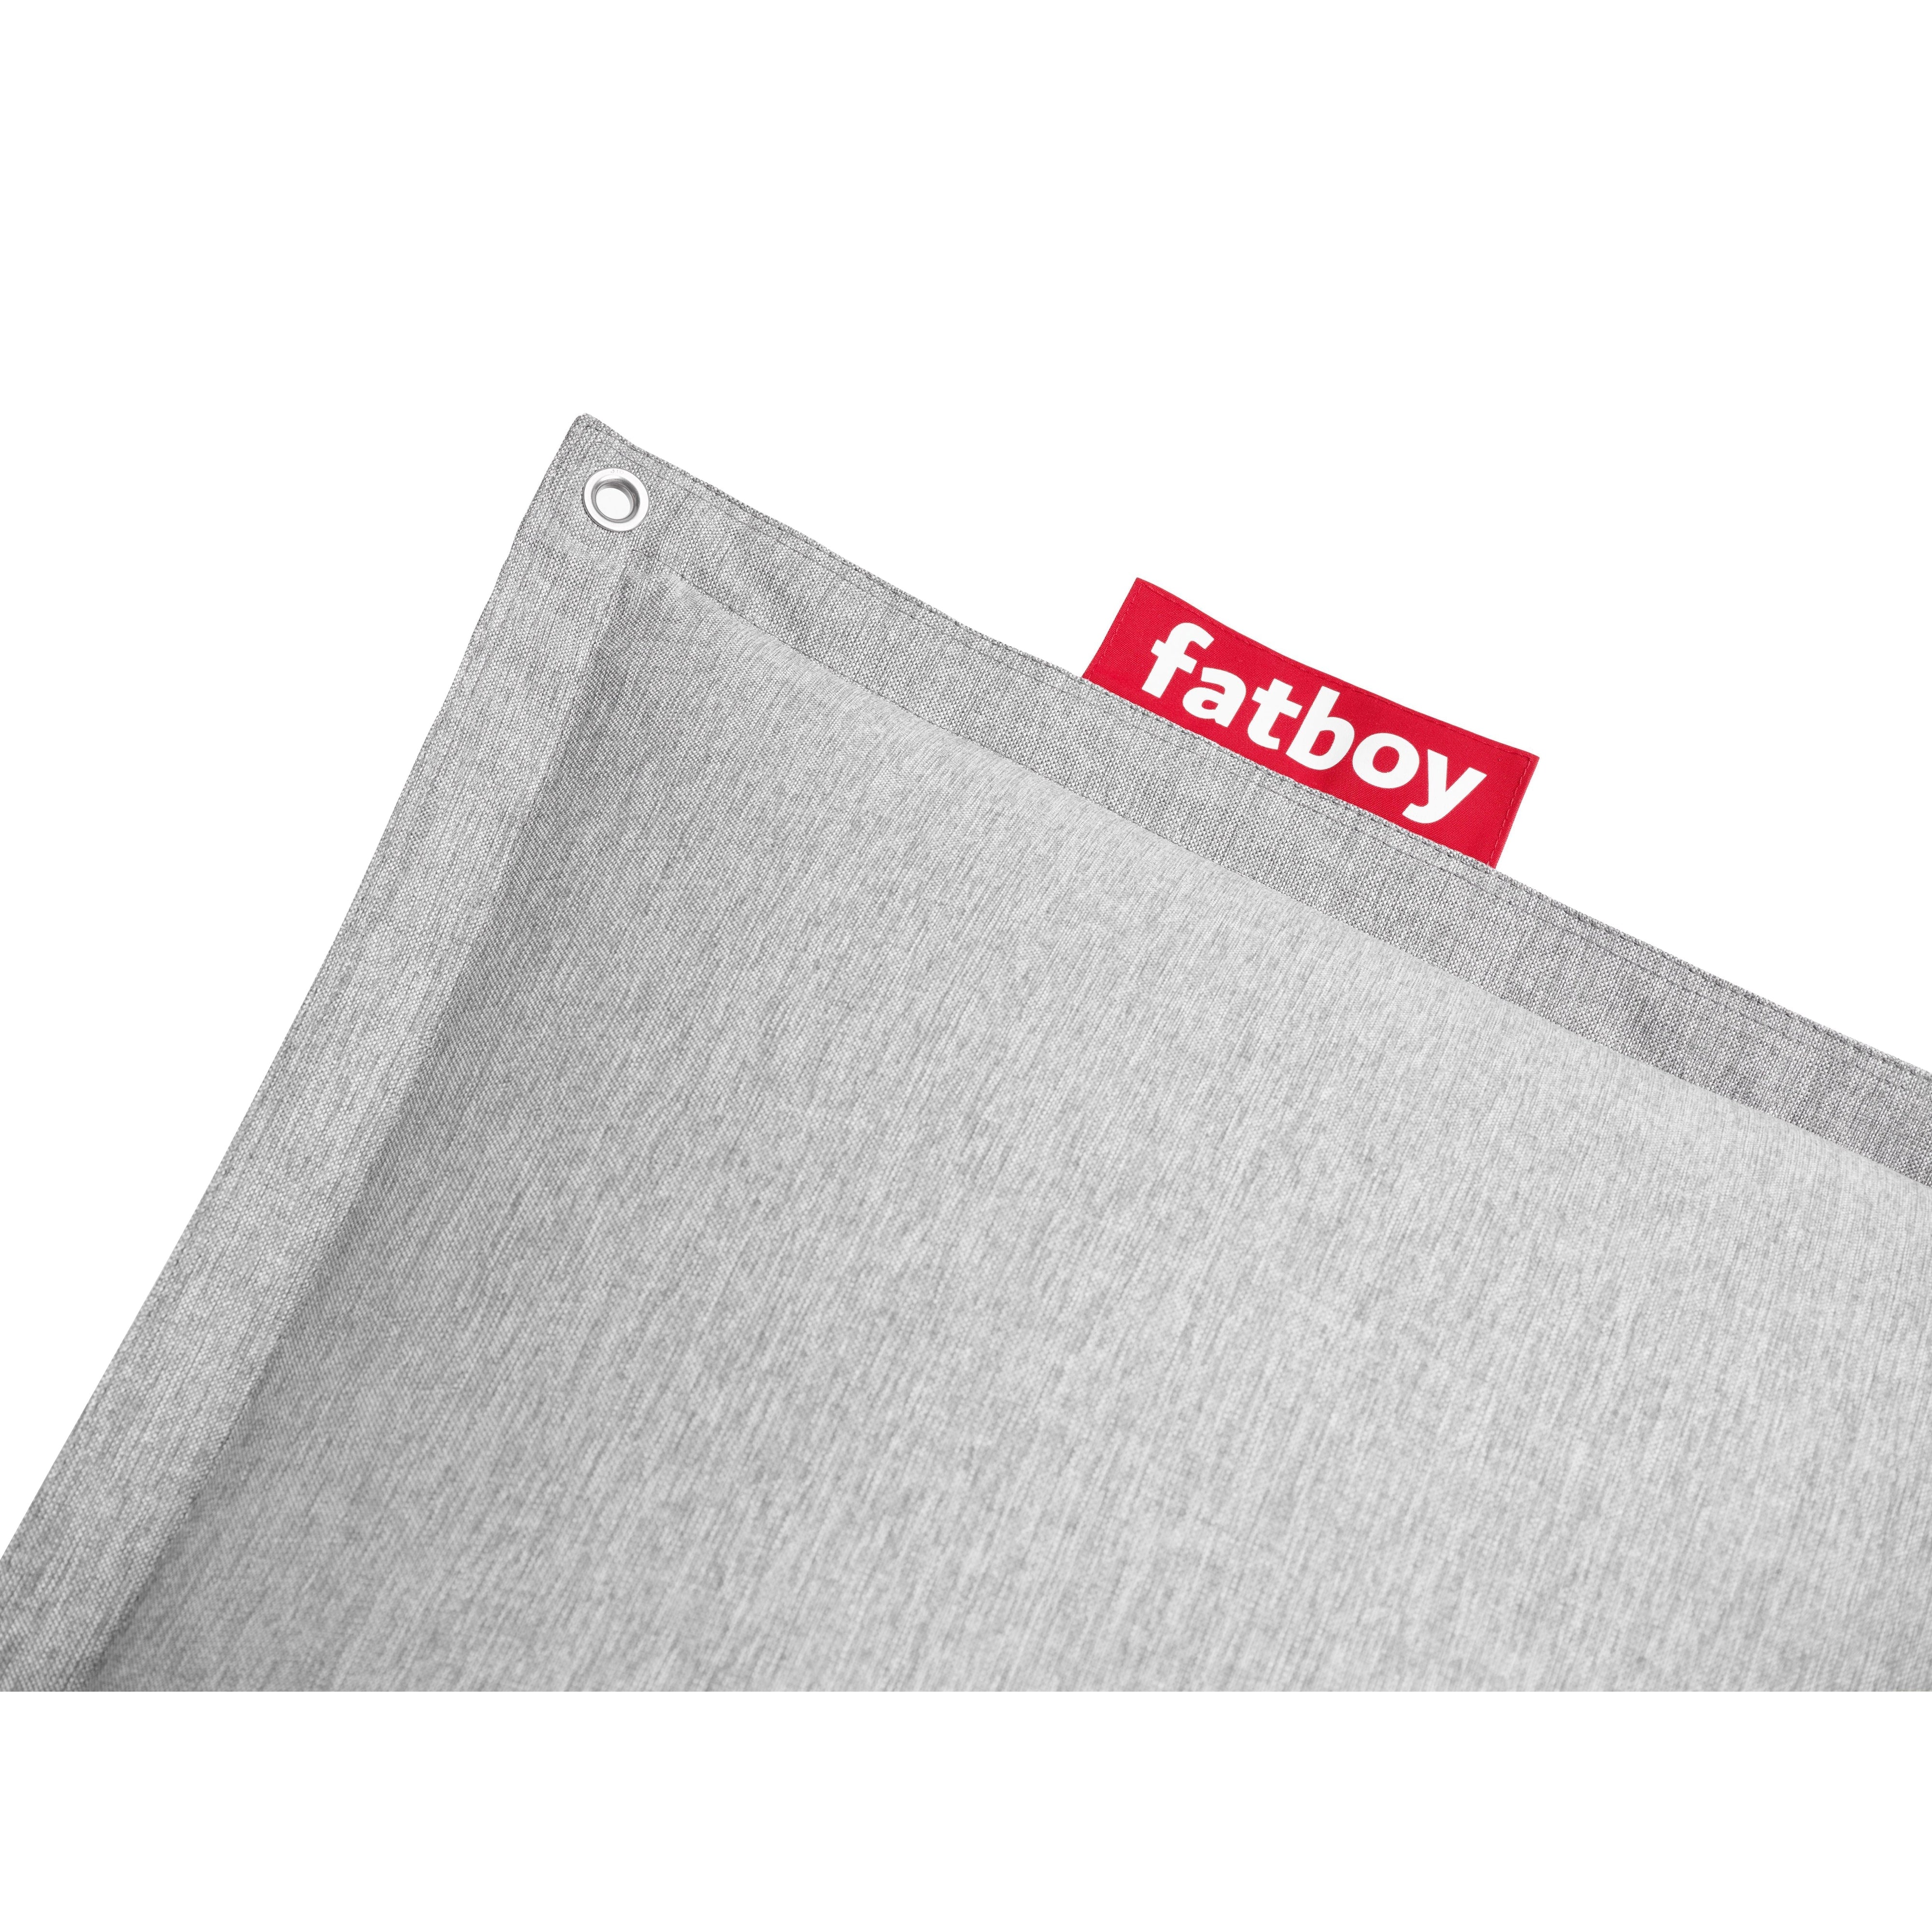 Fatboy Original floatzac beanbag, stengrå